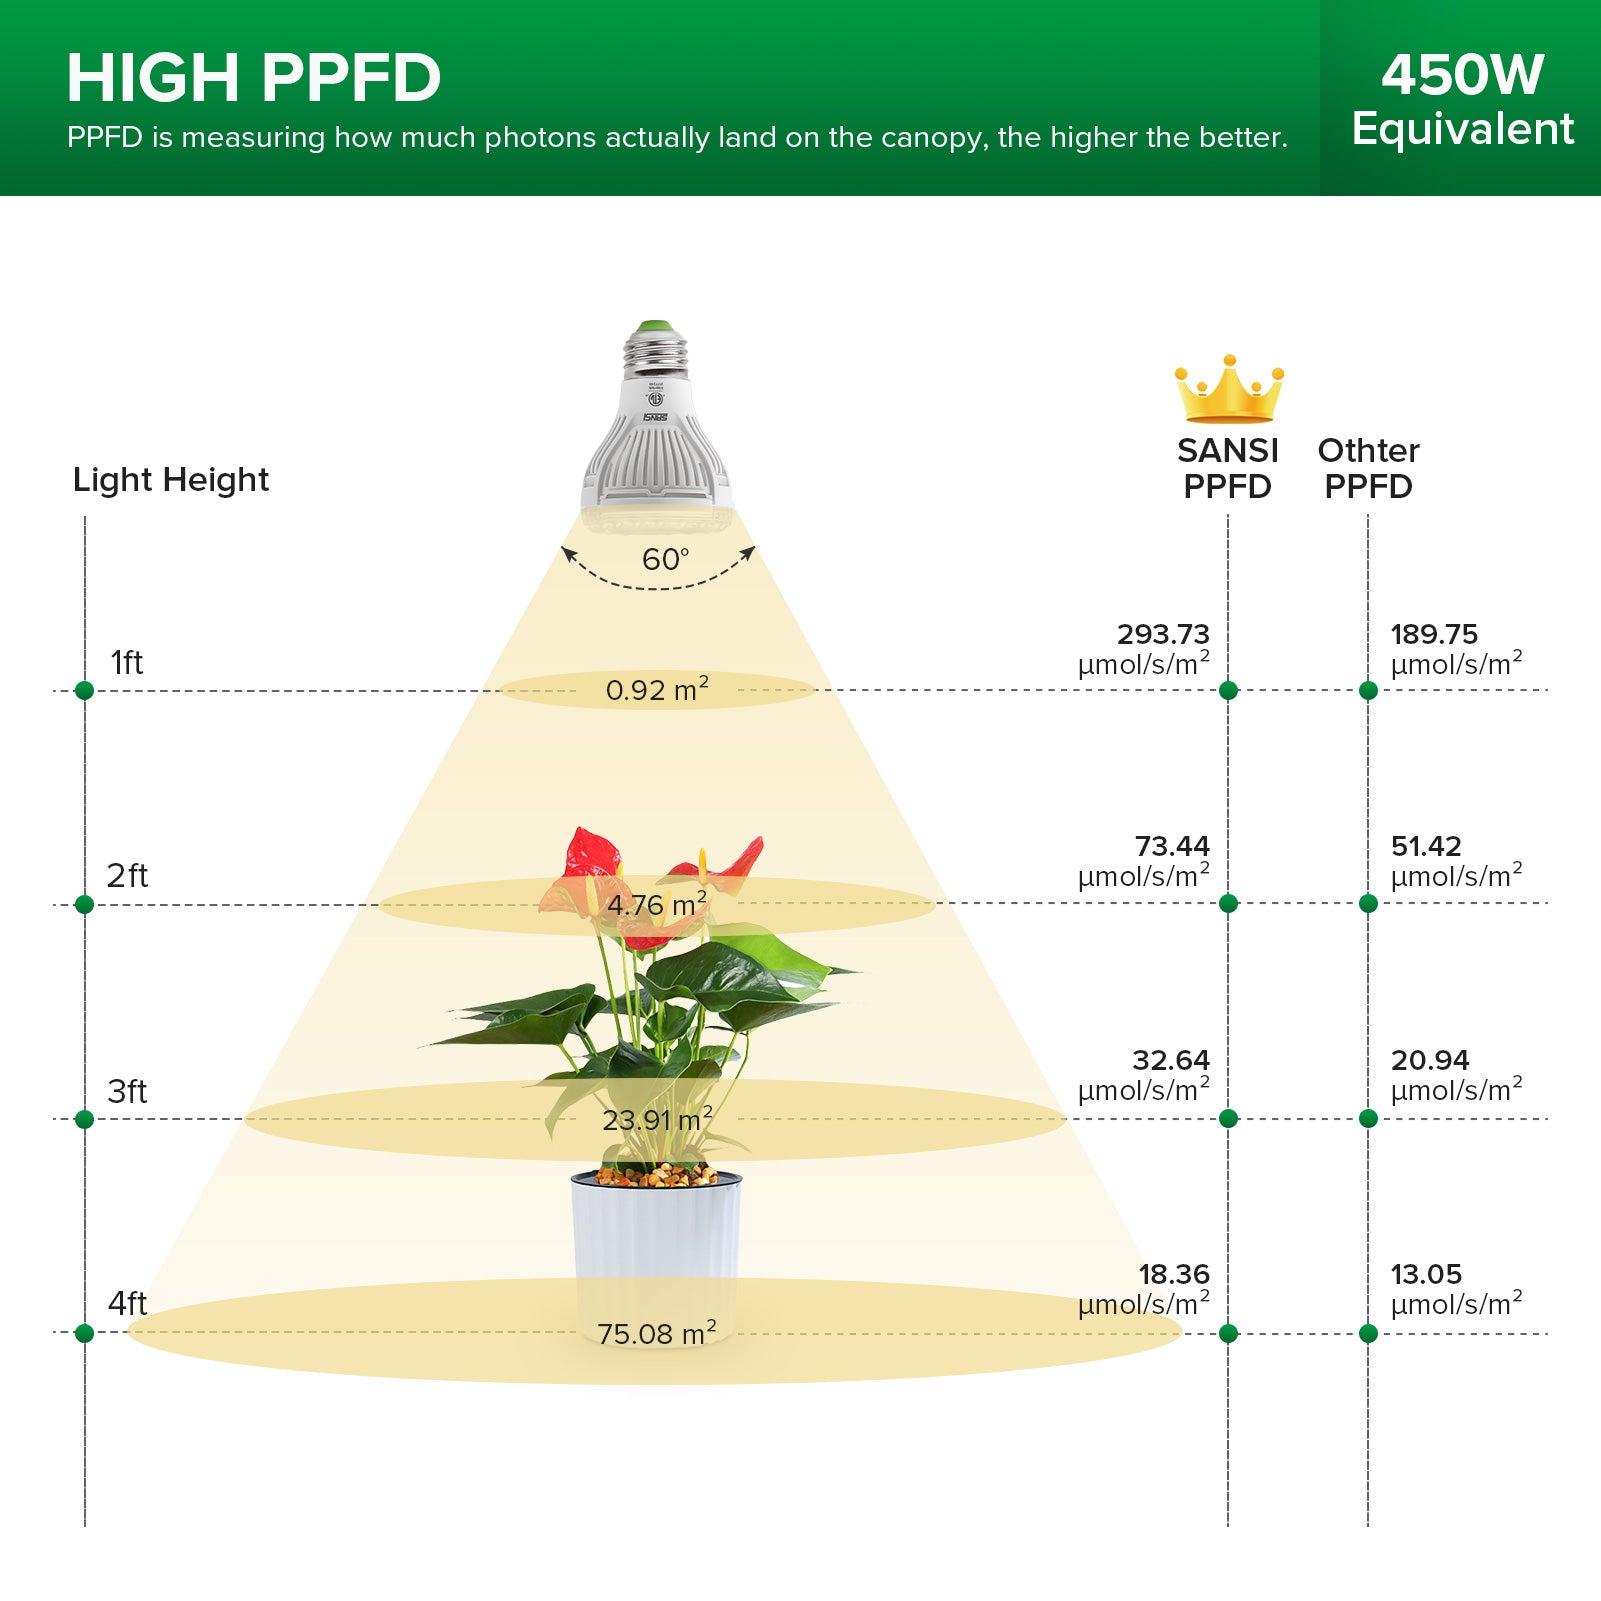 Adjustable Multi-Head Clip-on Grow Light has high PPFD.